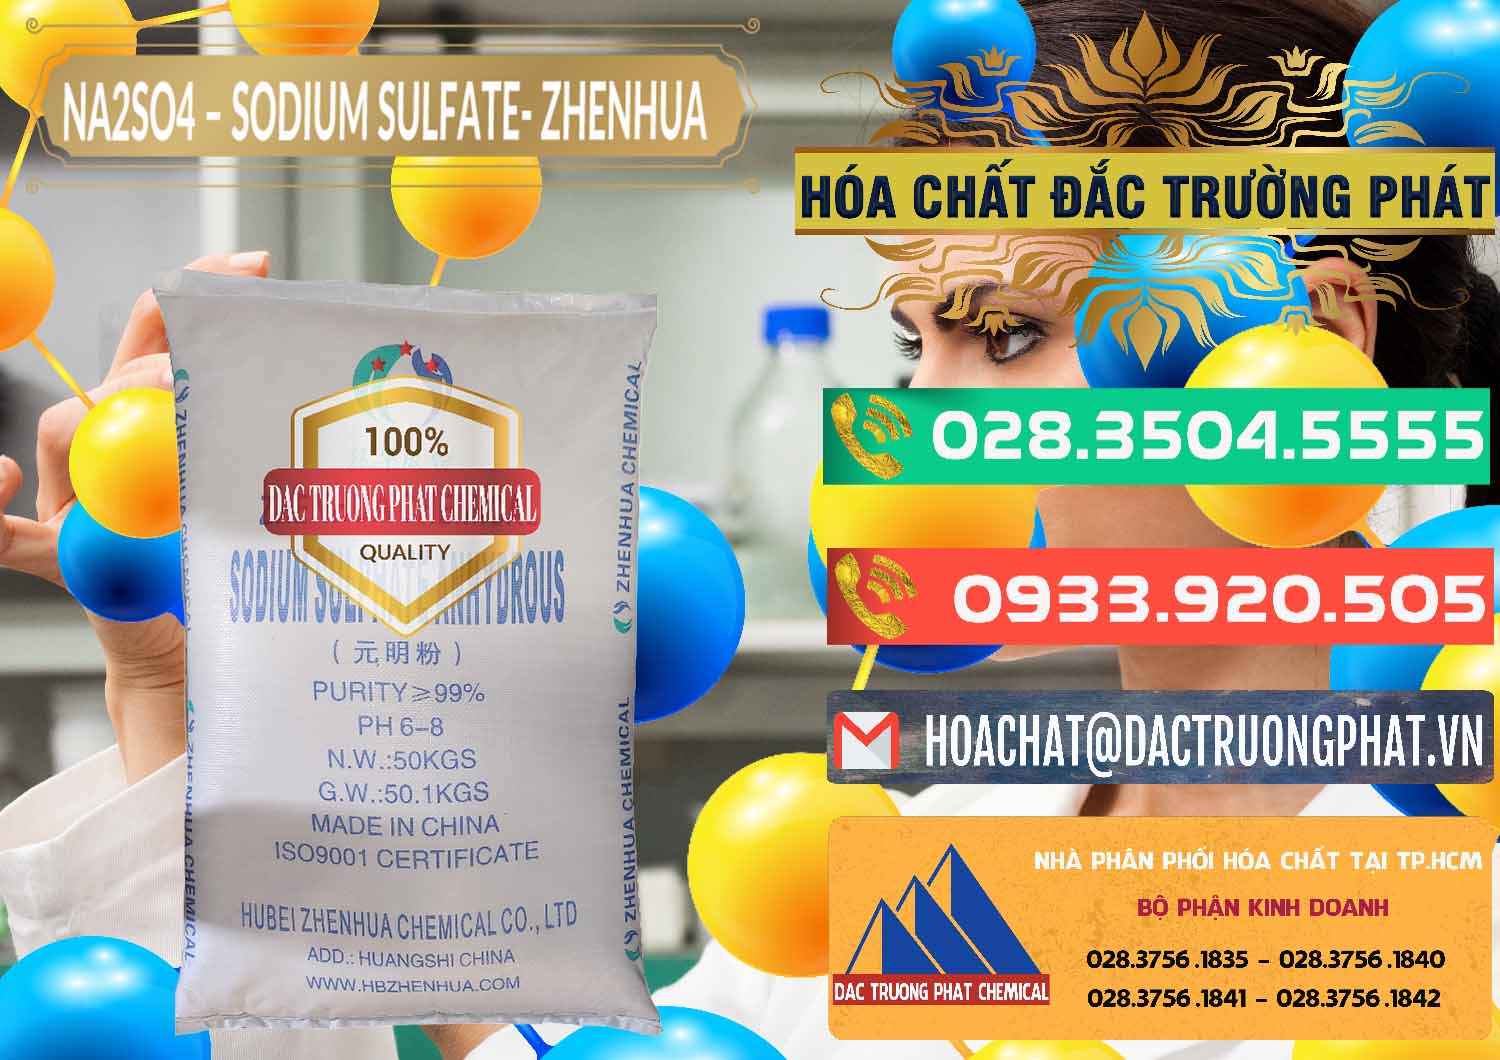 Cty chuyên kinh doanh ( bán ) Sodium Sulphate - Muối Sunfat Na2SO4 Zhenhua Trung Quốc China - 0101 - Phân phối & kinh doanh hóa chất tại TP.HCM - congtyhoachat.com.vn